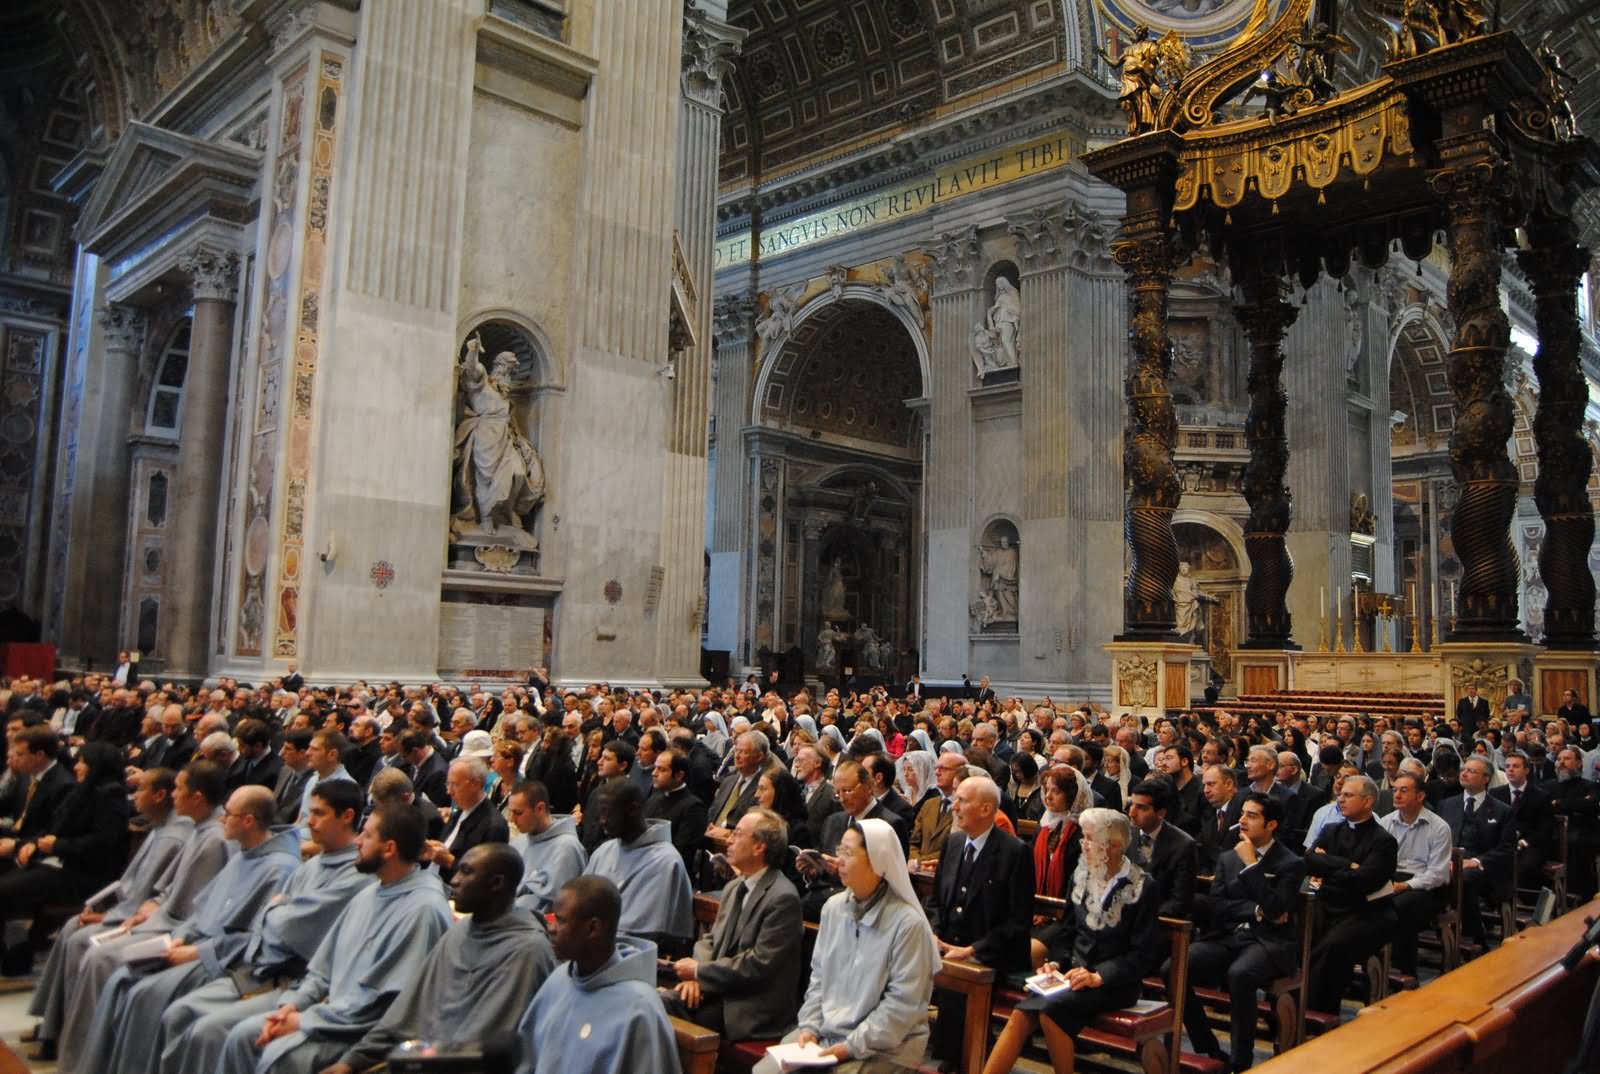 Mass Gathering Inside St. Peter's Basilica, Vatican City